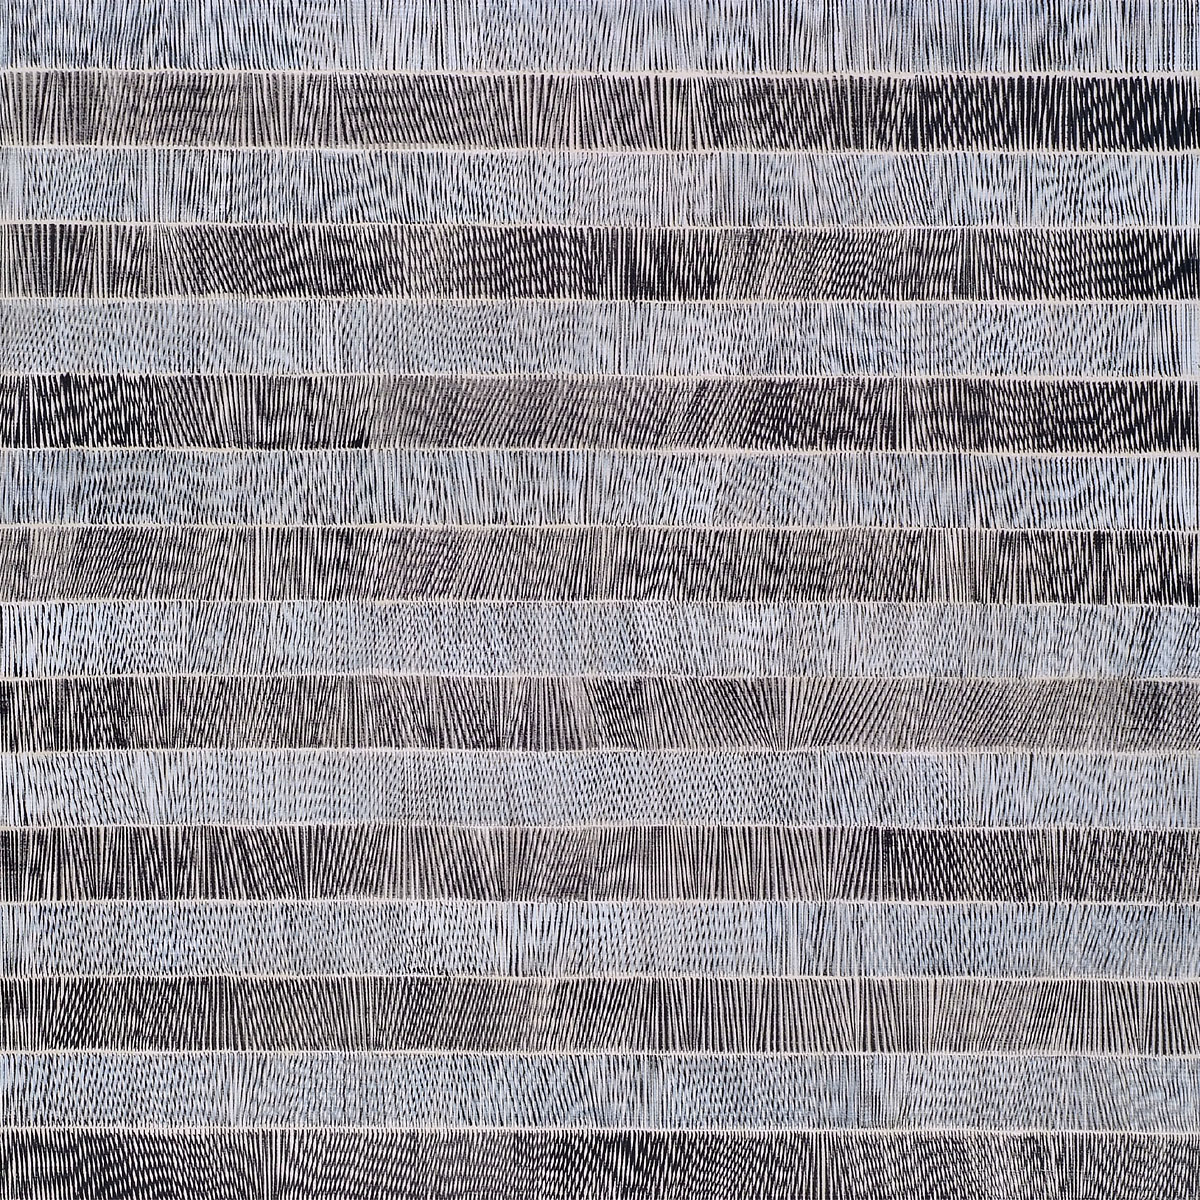 Nikola Dimitrov, Nocturne, 2011, 190 x 190 cm, Pigmente, Bindemittel, Lösungsmittel auf Leinwand